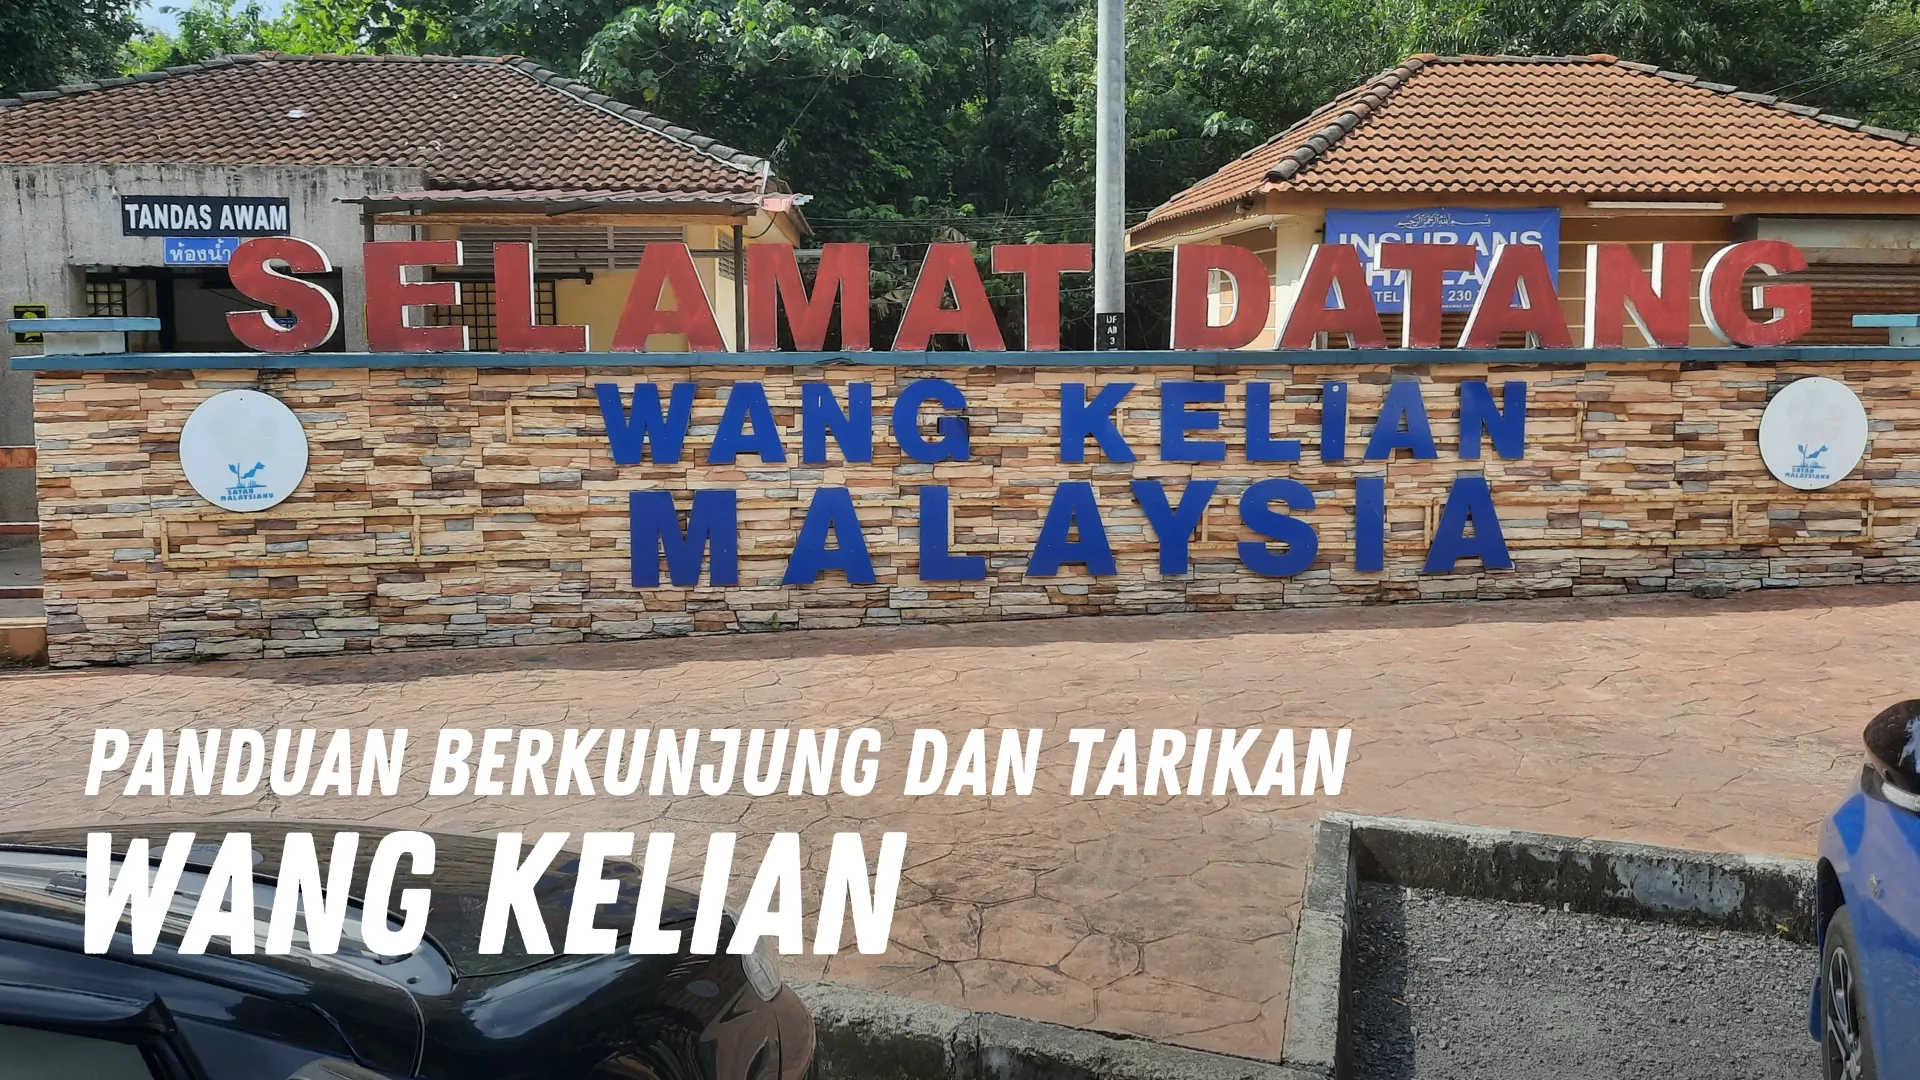 Review Wang Kelian Malaysia